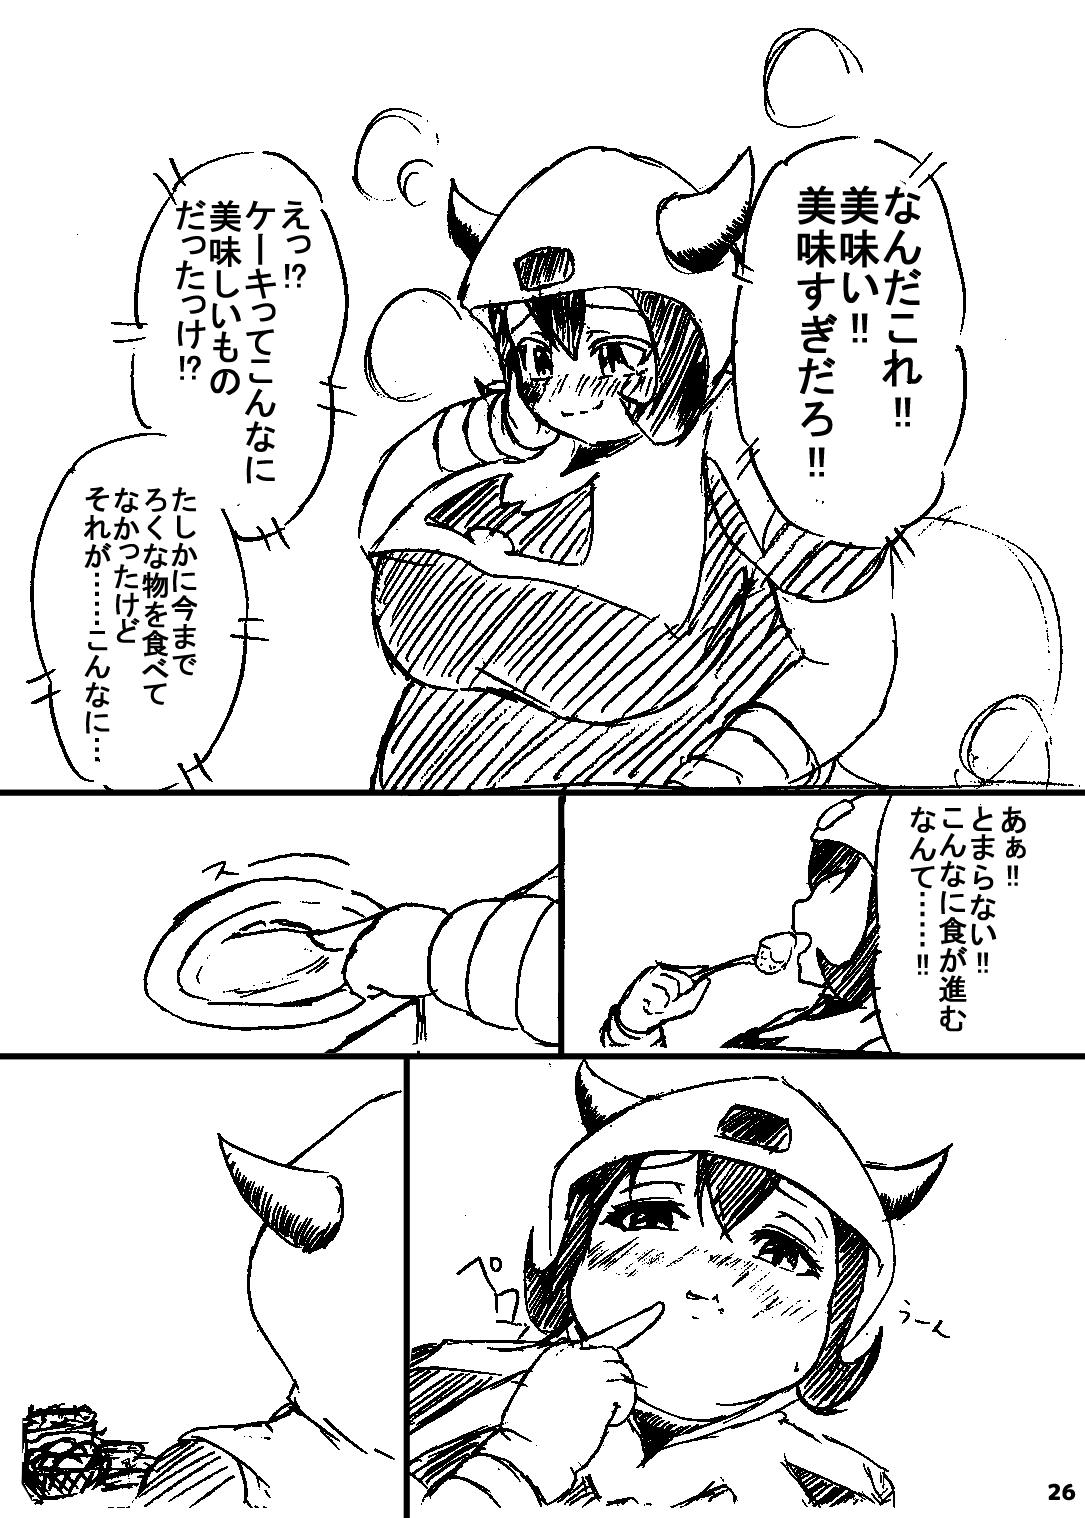 ポケスペカガリ肥満化漫画 24